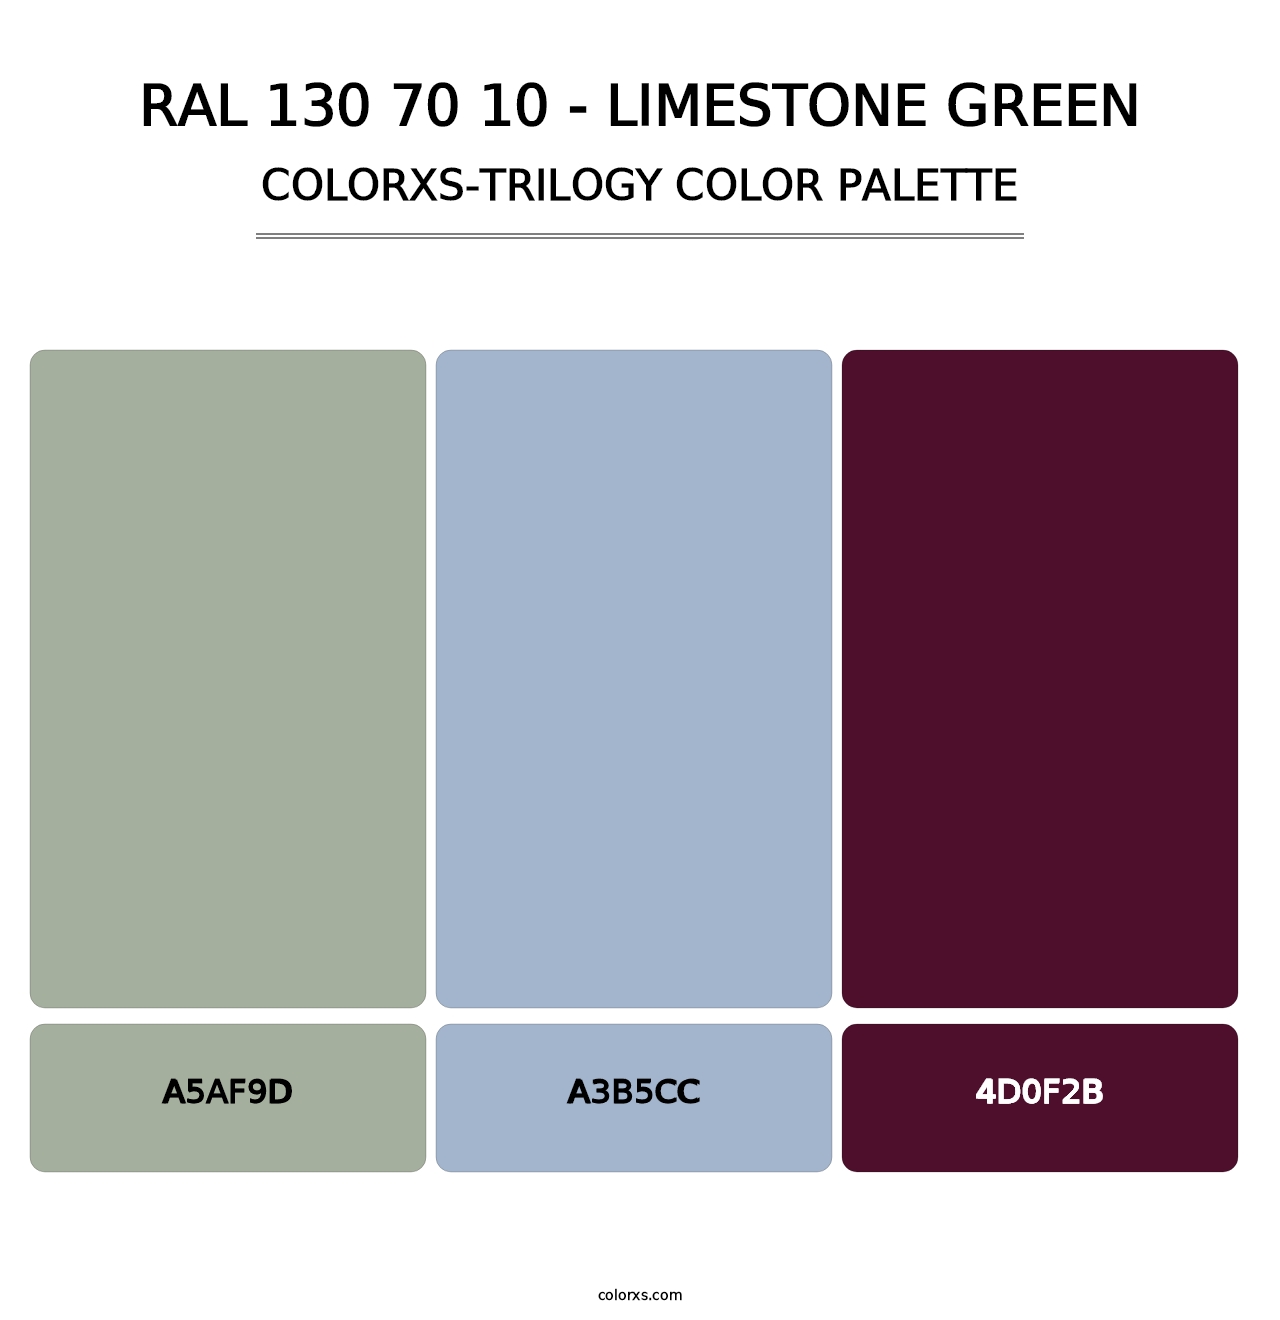 RAL 130 70 10 - Limestone Green - Colorxs Trilogy Palette